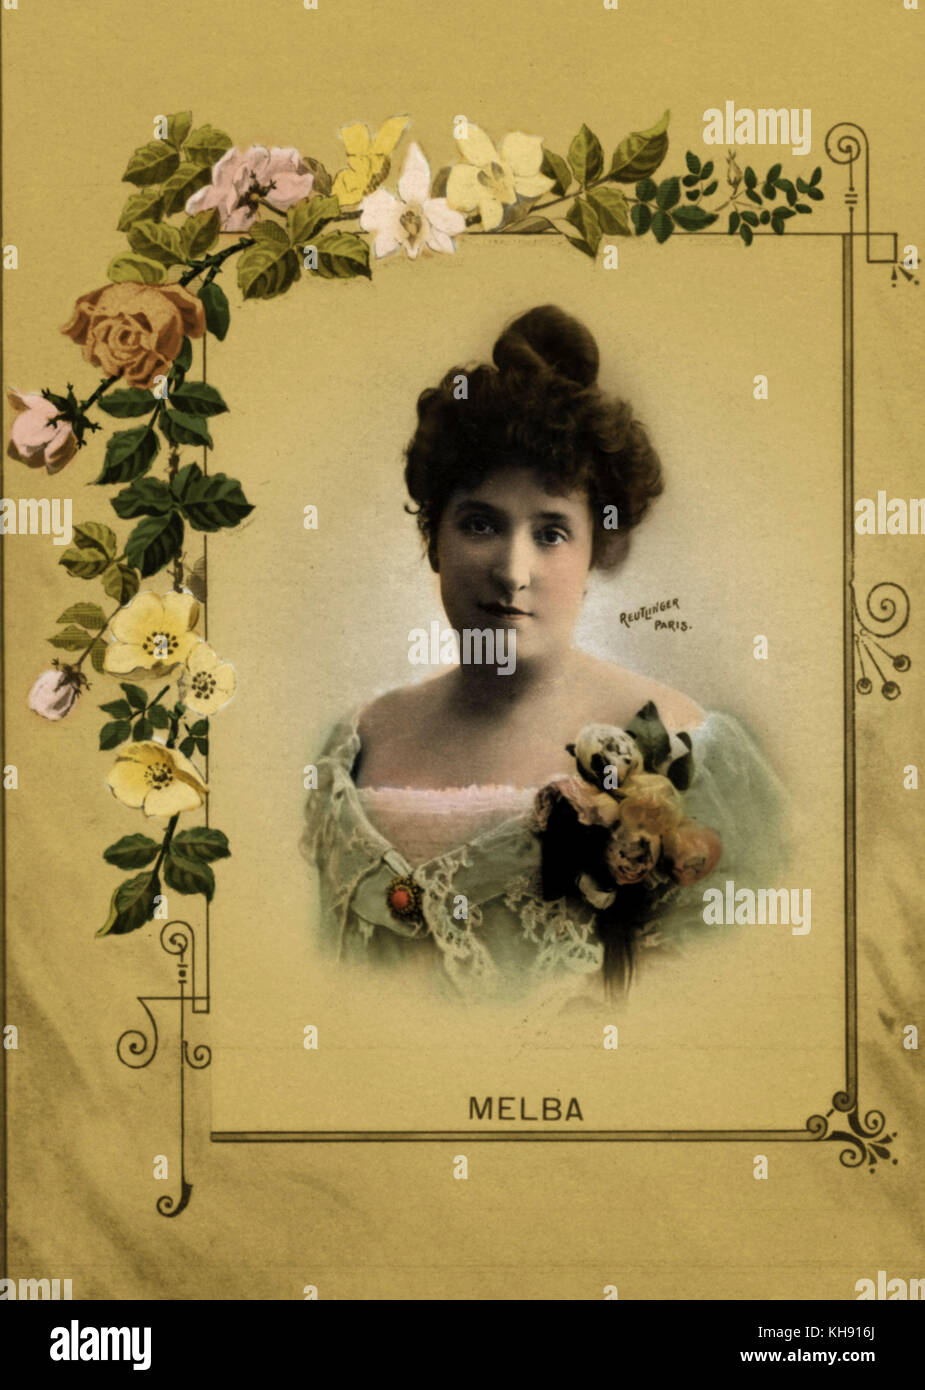 Nellie Melba e soprano australiano, 19 maggio 1861 - 23 febbraio 1931. Ritratto circondato da decoro floreale. Reutlinger, Parigi Foto Stock